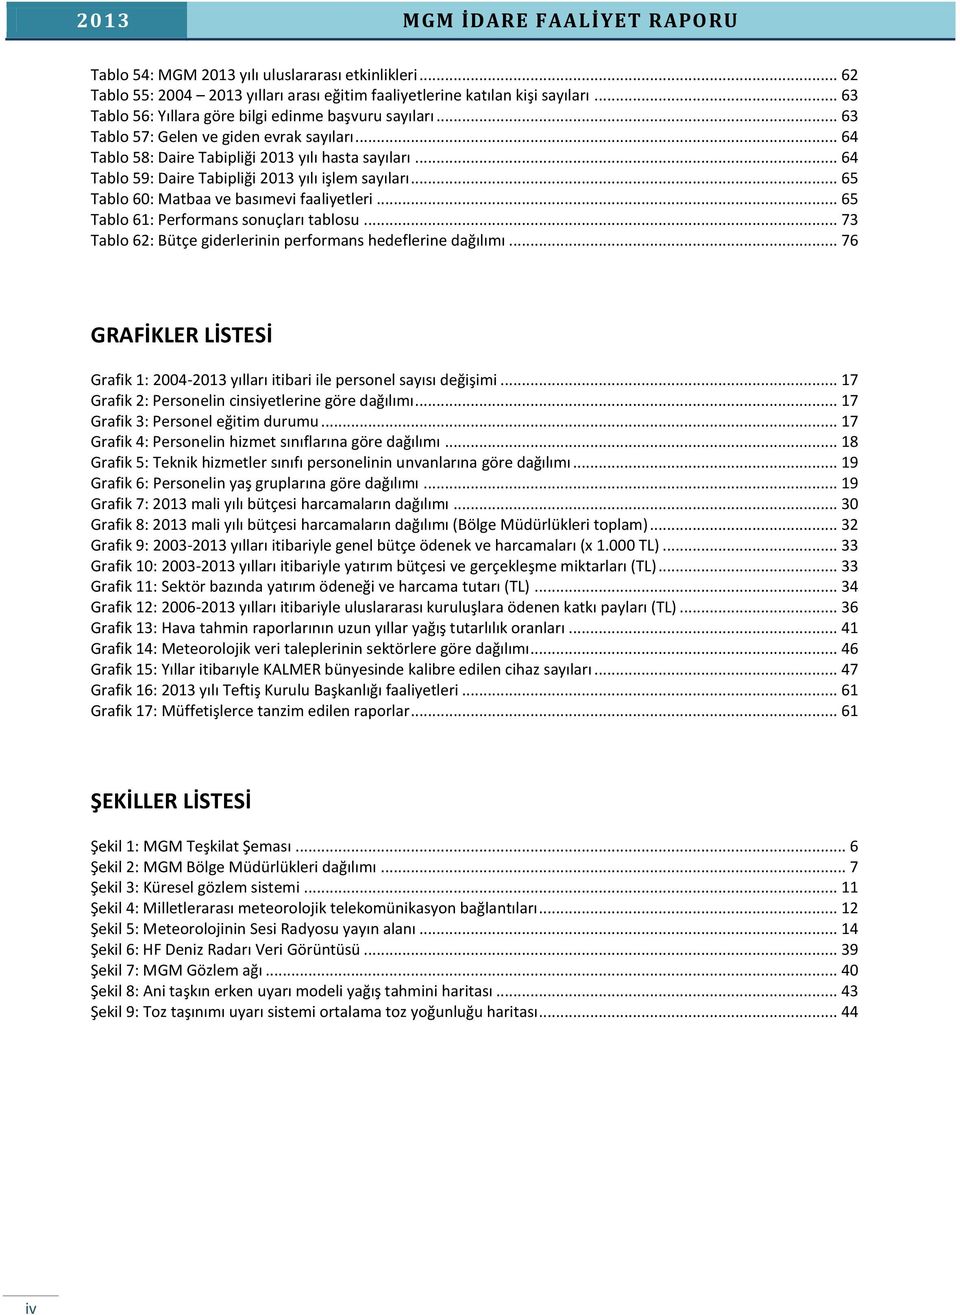 .. 64 Tablo 59: Daire Tabipliği 2013 yılı işlem sayıları... 65 Tablo 60: Matbaa ve basımevi faaliyetleri... 65 Tablo 61: Performans sonuçları tablosu.